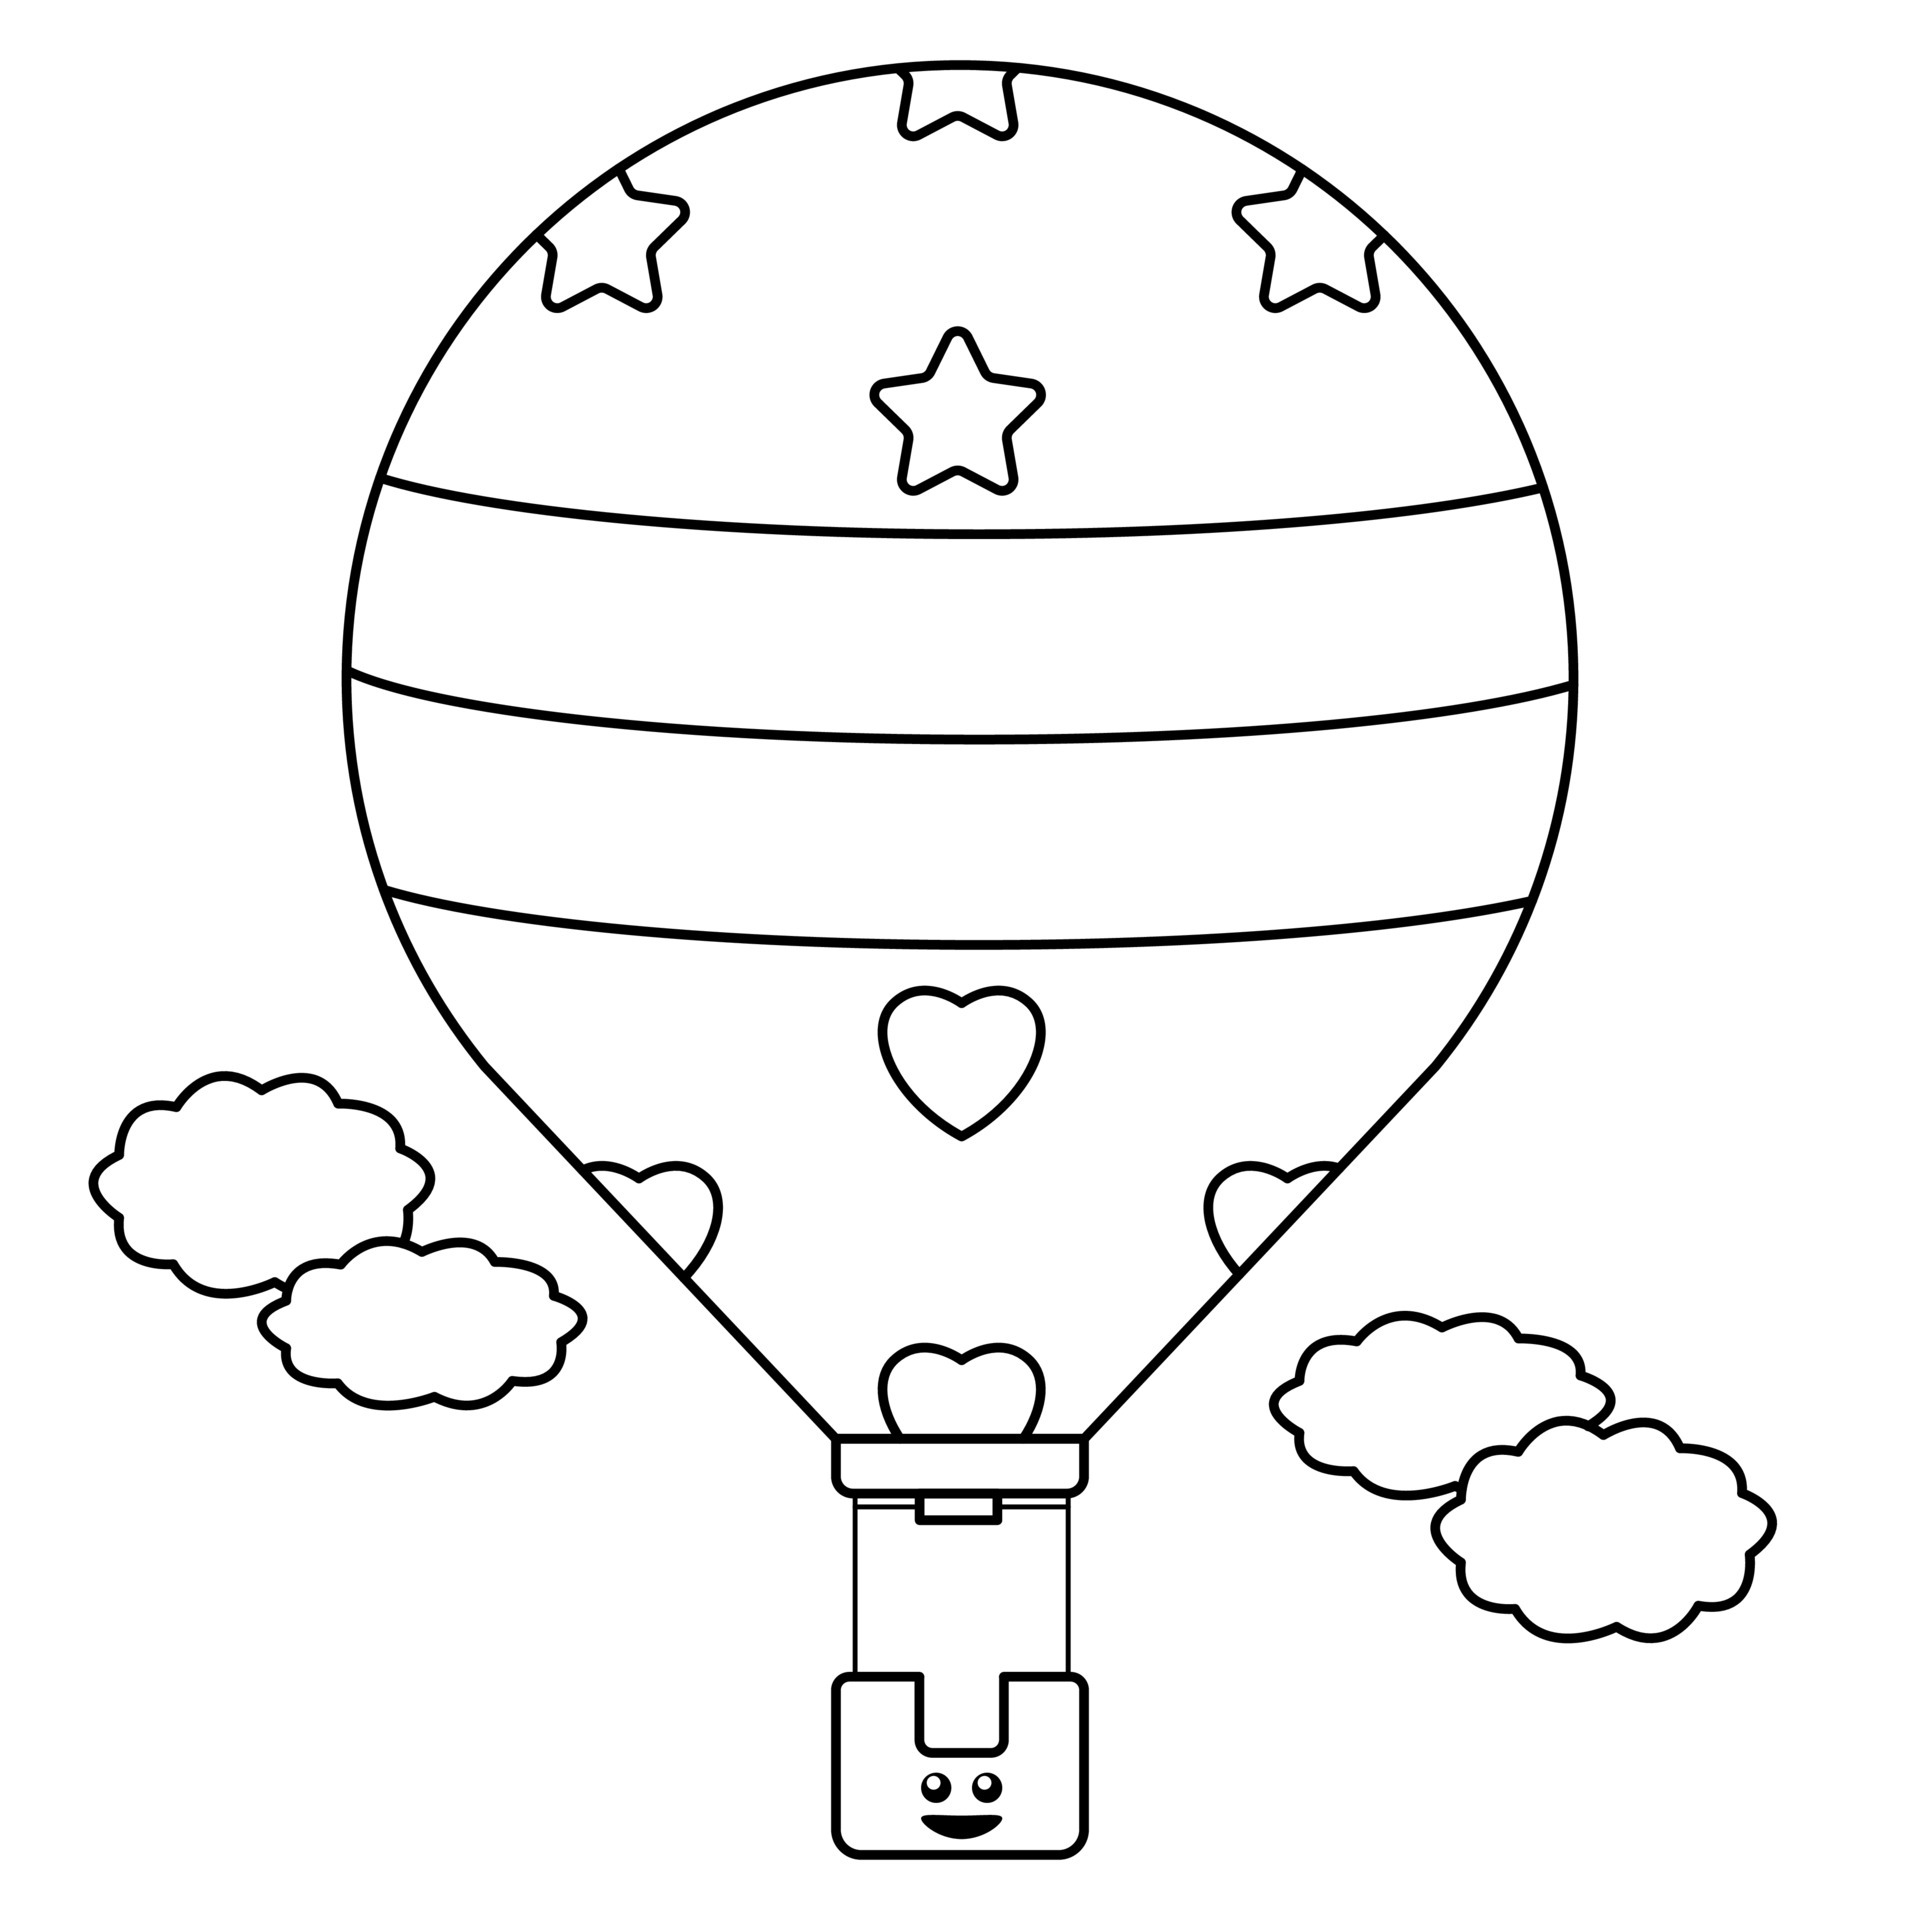 Desenho de Balão de ar quente para Colorir - Colorir.com